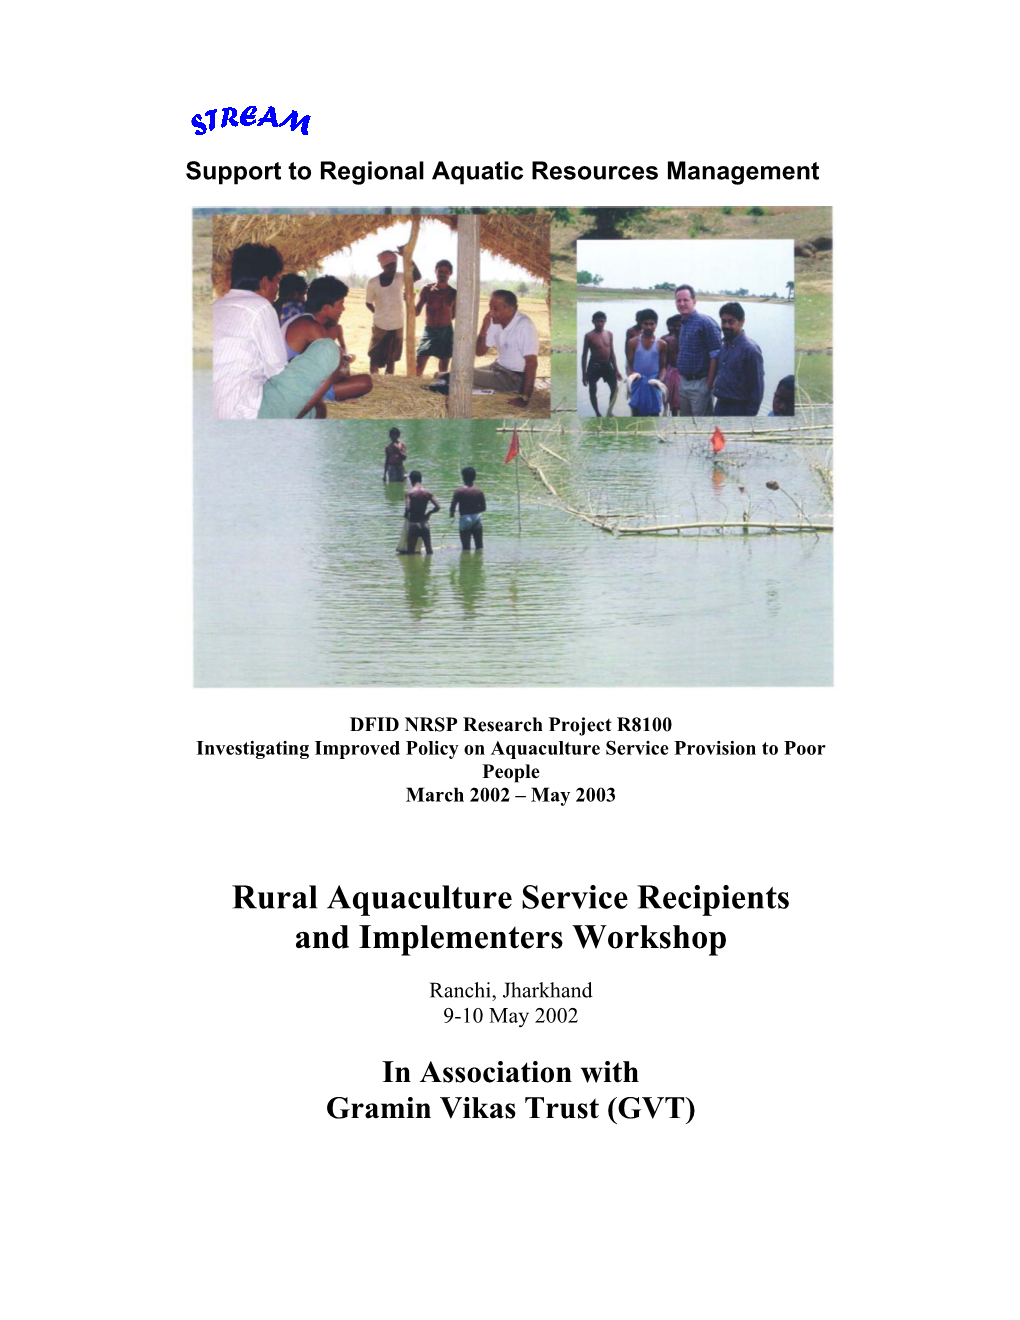 Rural Aquaculture Service Recipients and Implementers Workshop